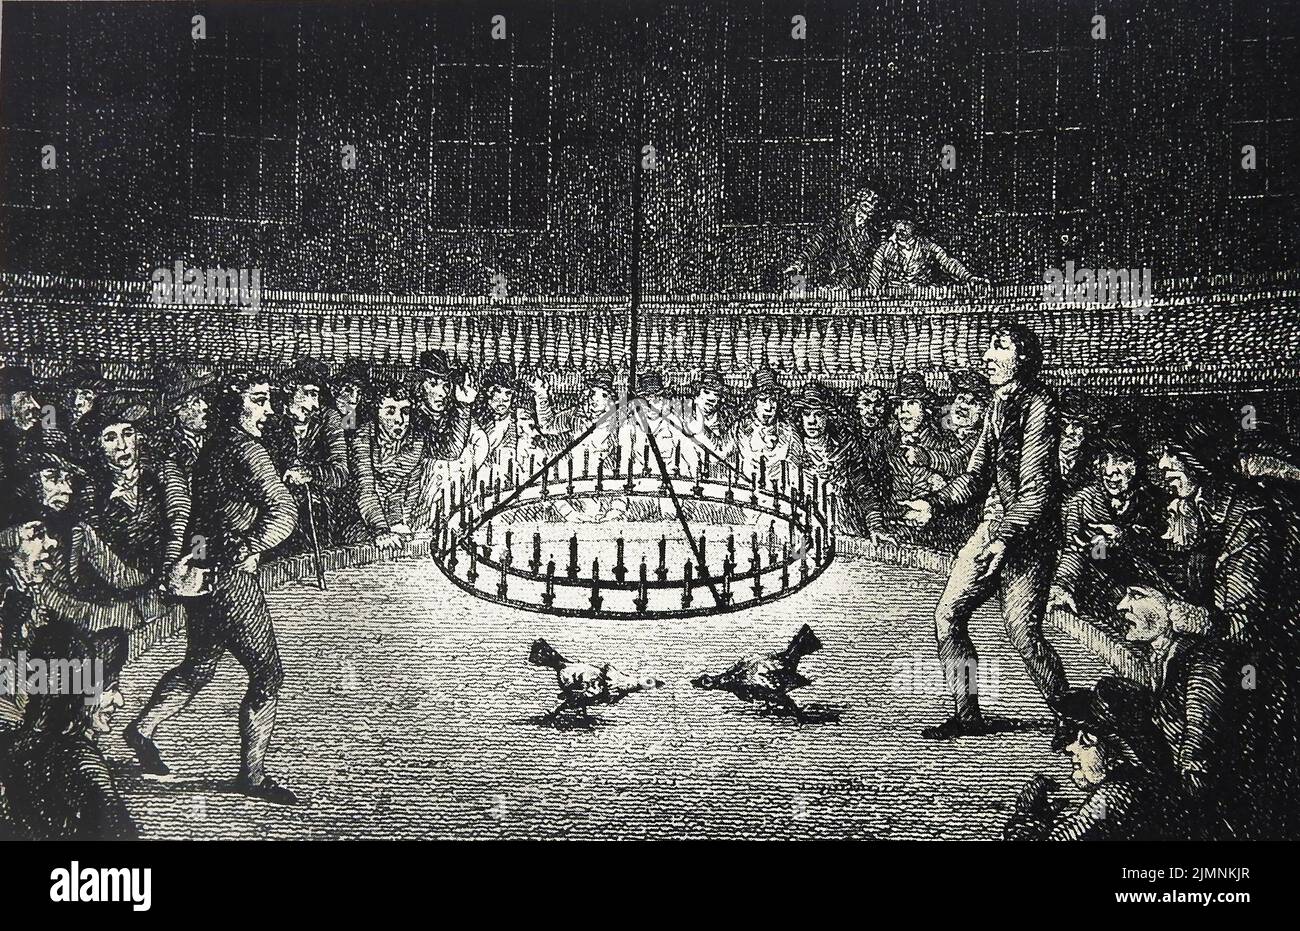 Une illustration inhabituelle d'une fosse britannique de combat de coq de 18th siècle éclairée par une bougie. Banque D'Images